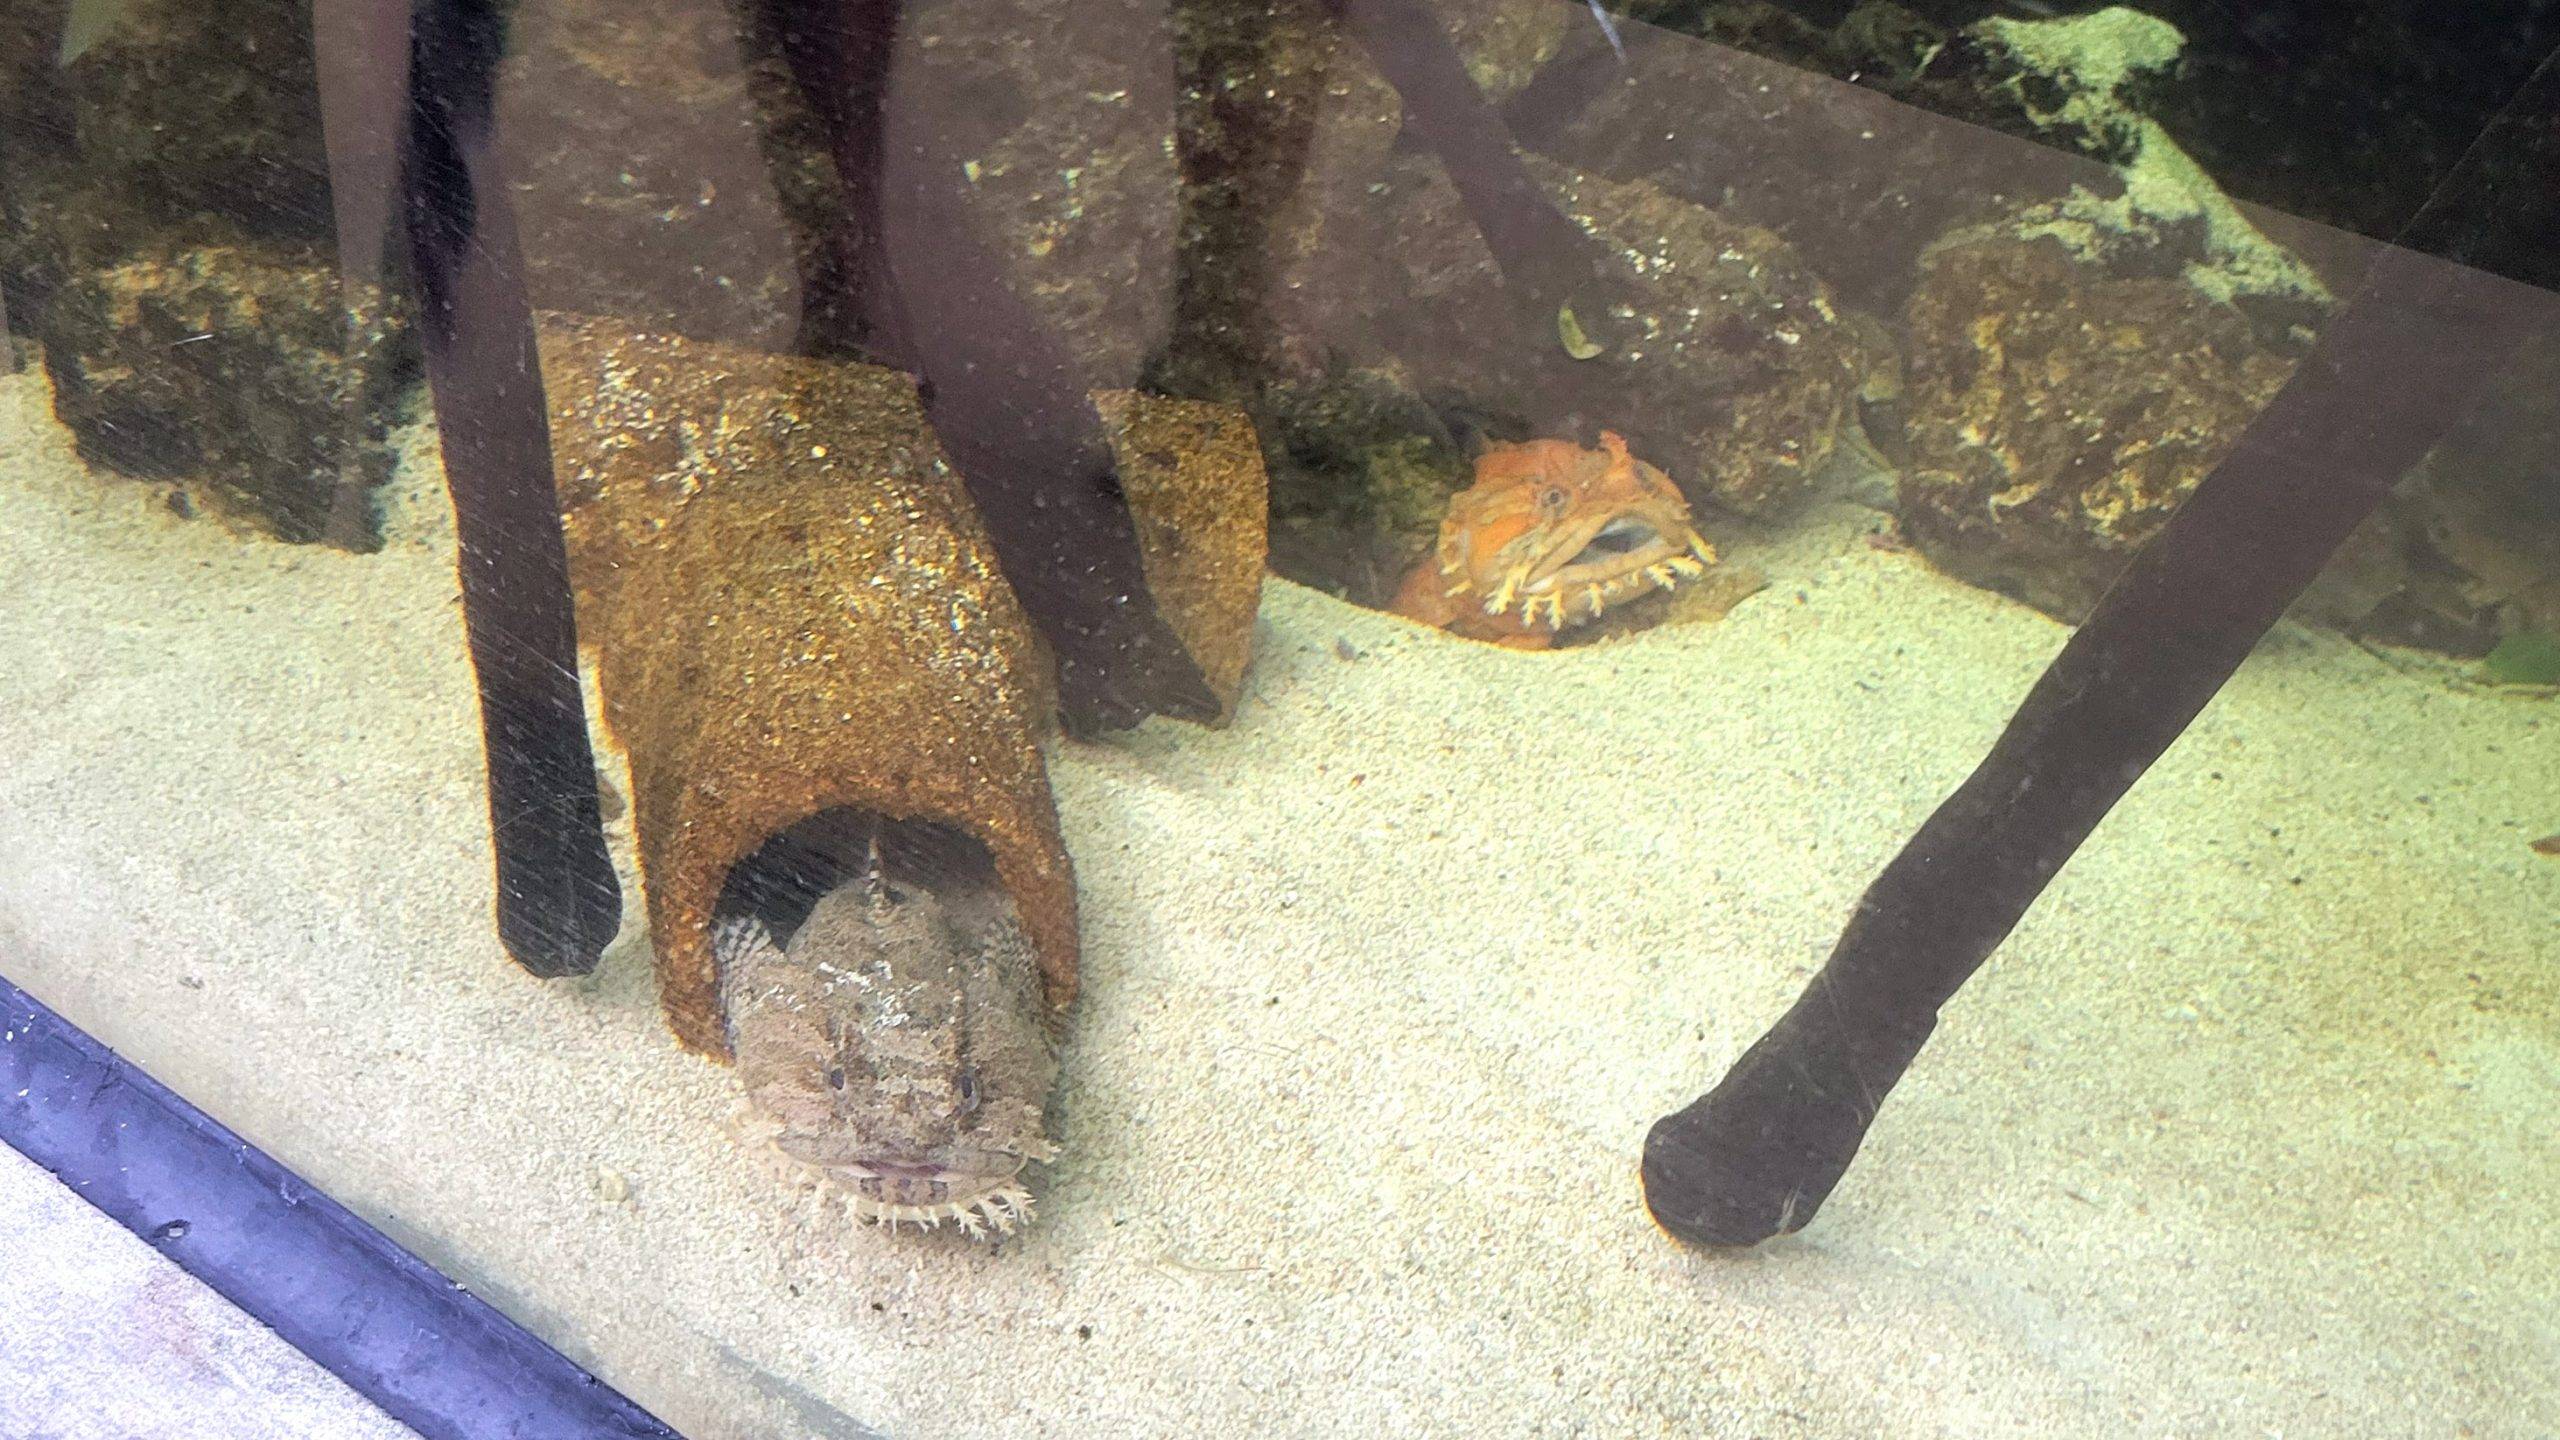 toadfish in an aquarium 